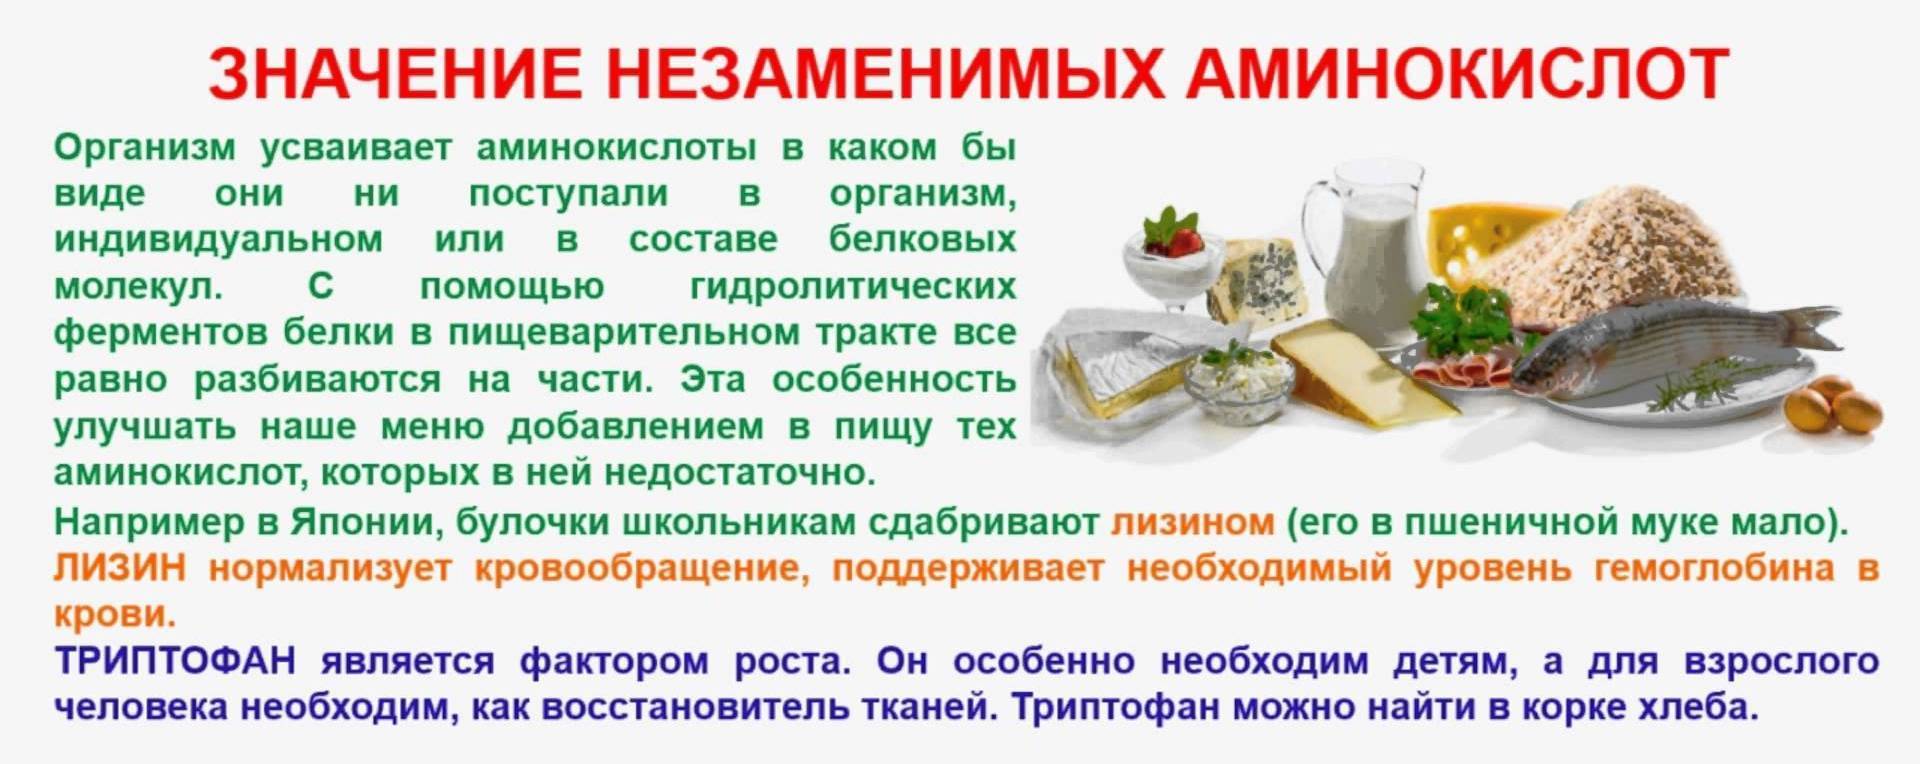 Аминокислоты для врача и пациента: почему они так важны | портал 1nep.ru